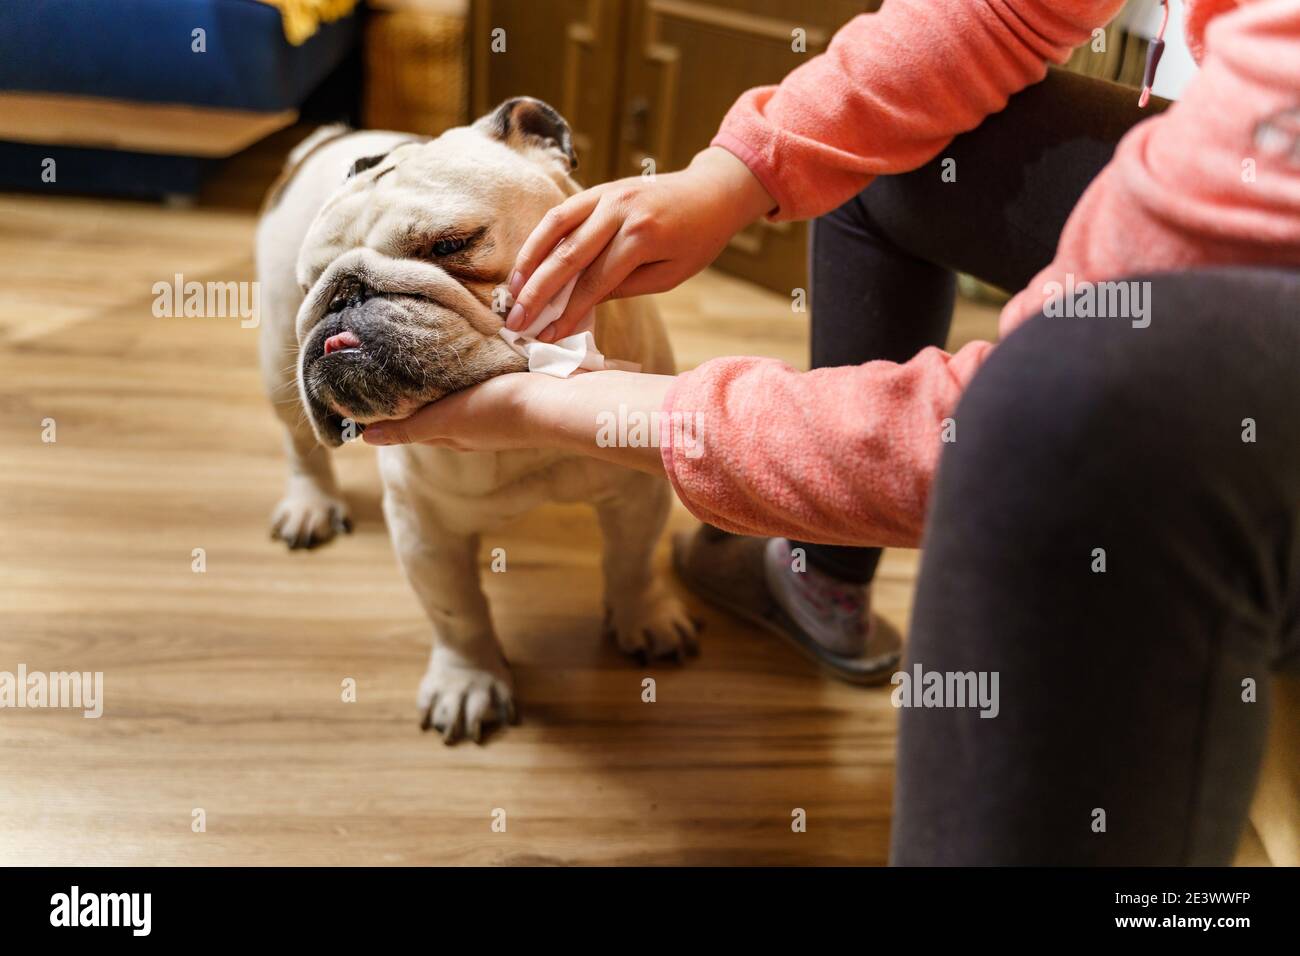 Unbekannte kaukasische Frau kümmert sich um ihren Hund - Hände Von weiblichen Mädchen mit nassen Tuch, um den Kopf zu reinigen Ihr Haustier Erwachsene ältere englische Bulldogge Stockfoto